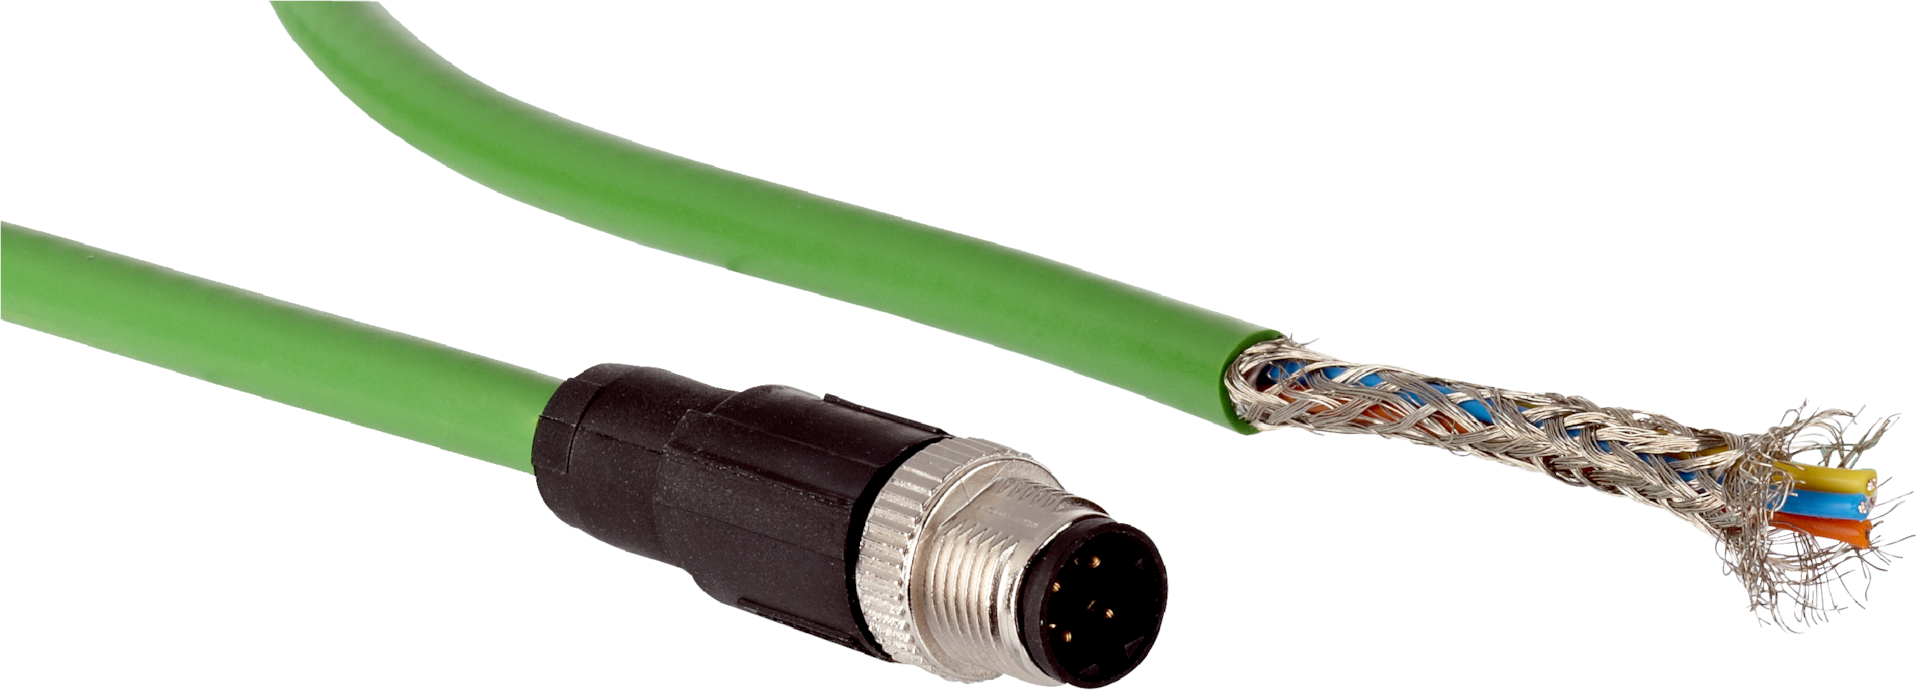 Connettori per cavi elettrici Splitter compatti rapidi conduttore SPL con  giunzione a molla blocco Termianl scatola di giunzione plug-in AWG 28-12 -  AliExpress